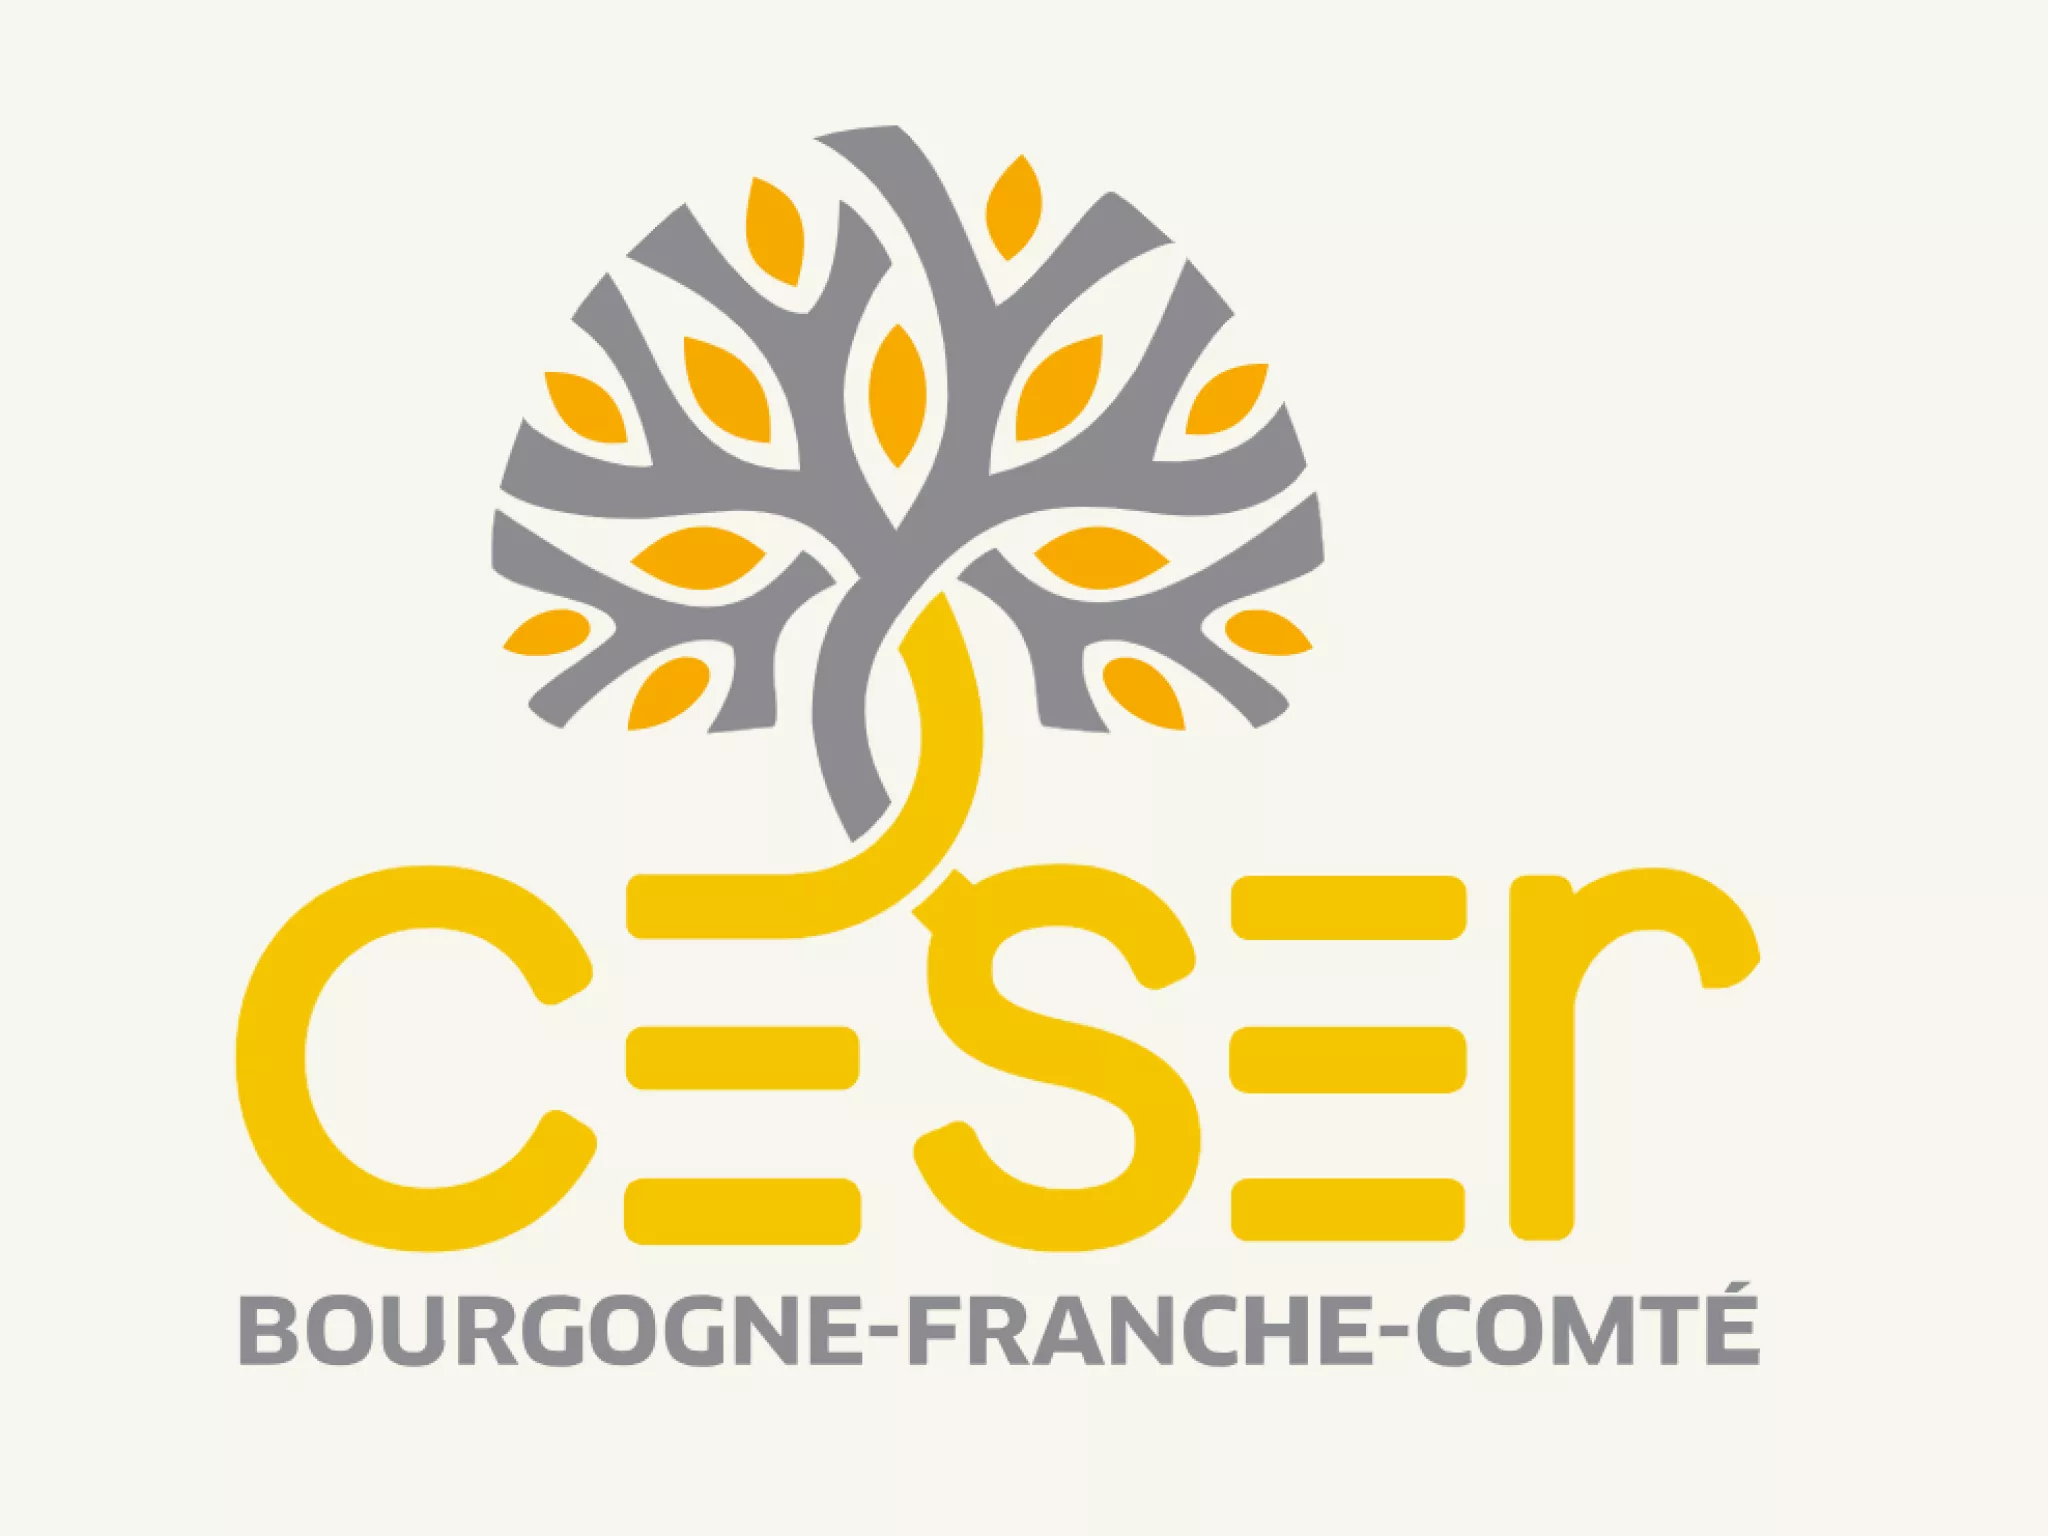 Logo CESER